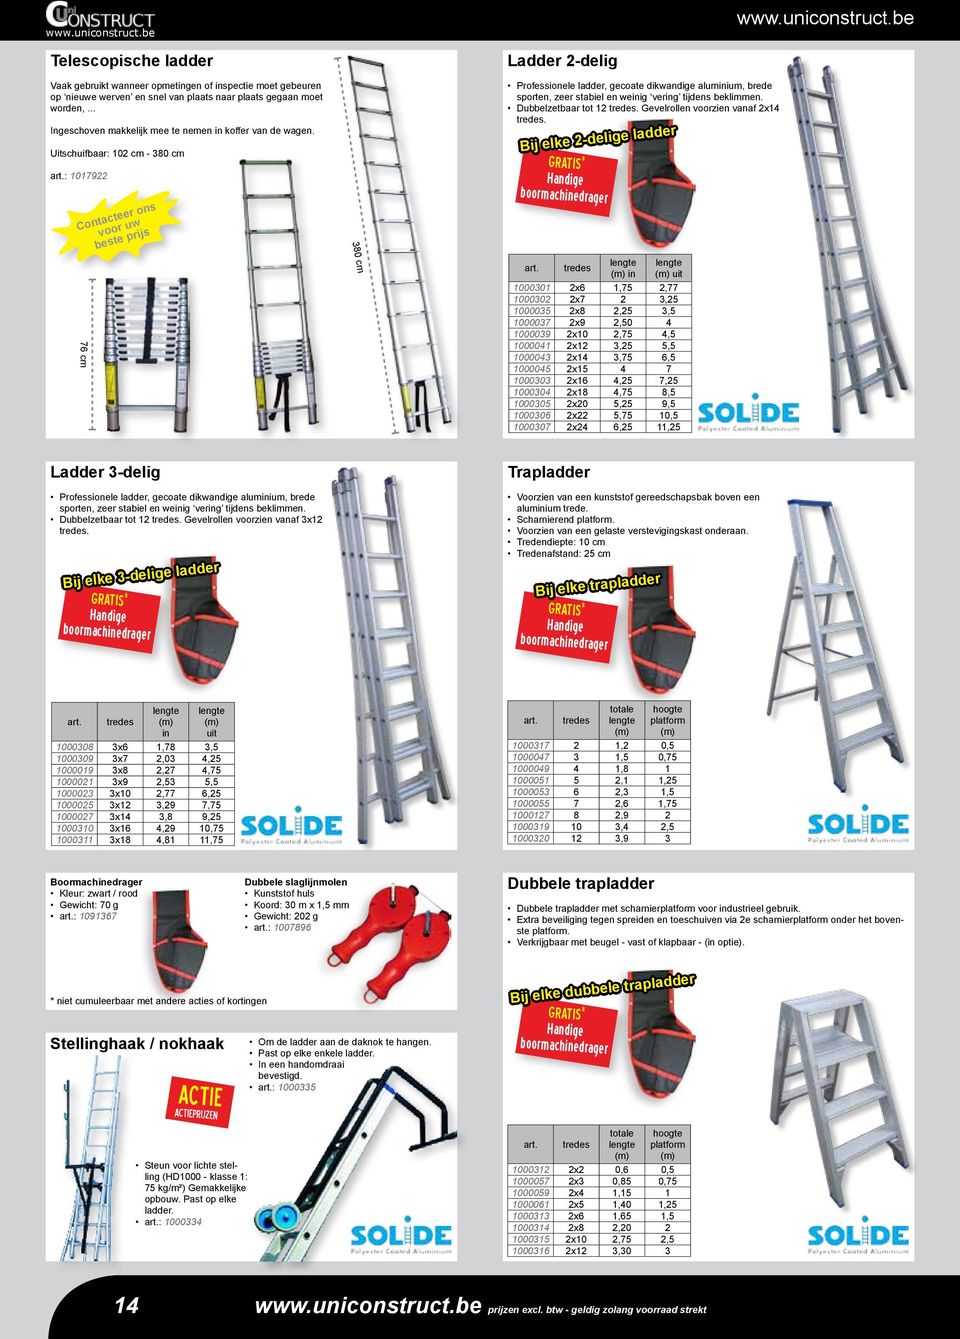 : 1017922 76 cm 380 cm Ladder 2-delig Professionele ladder, gecoate dikwandige aluminium, brede sporten, zeer stabiel en weinig vering tijdens beklimmen. Dubbelzetbaar tot 12 tredes.